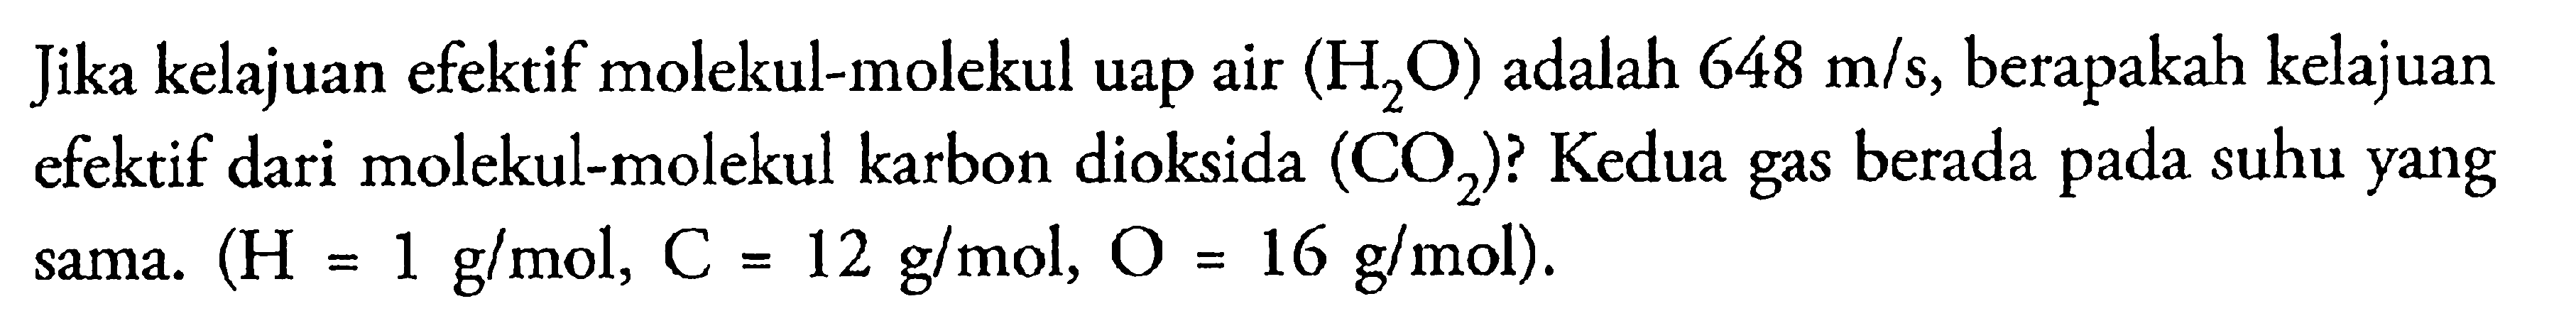 Jika kelajuan efektif molekul-molekul uap air (H2O) adalah 648 m/s, berapakah kelajuan efektif dari molekul-molekul karbon dioksida (CO2)? Kedua berada suhu yang sama. (H = 1 g/mol, C = 12 g/mol, = 16 g/mol).